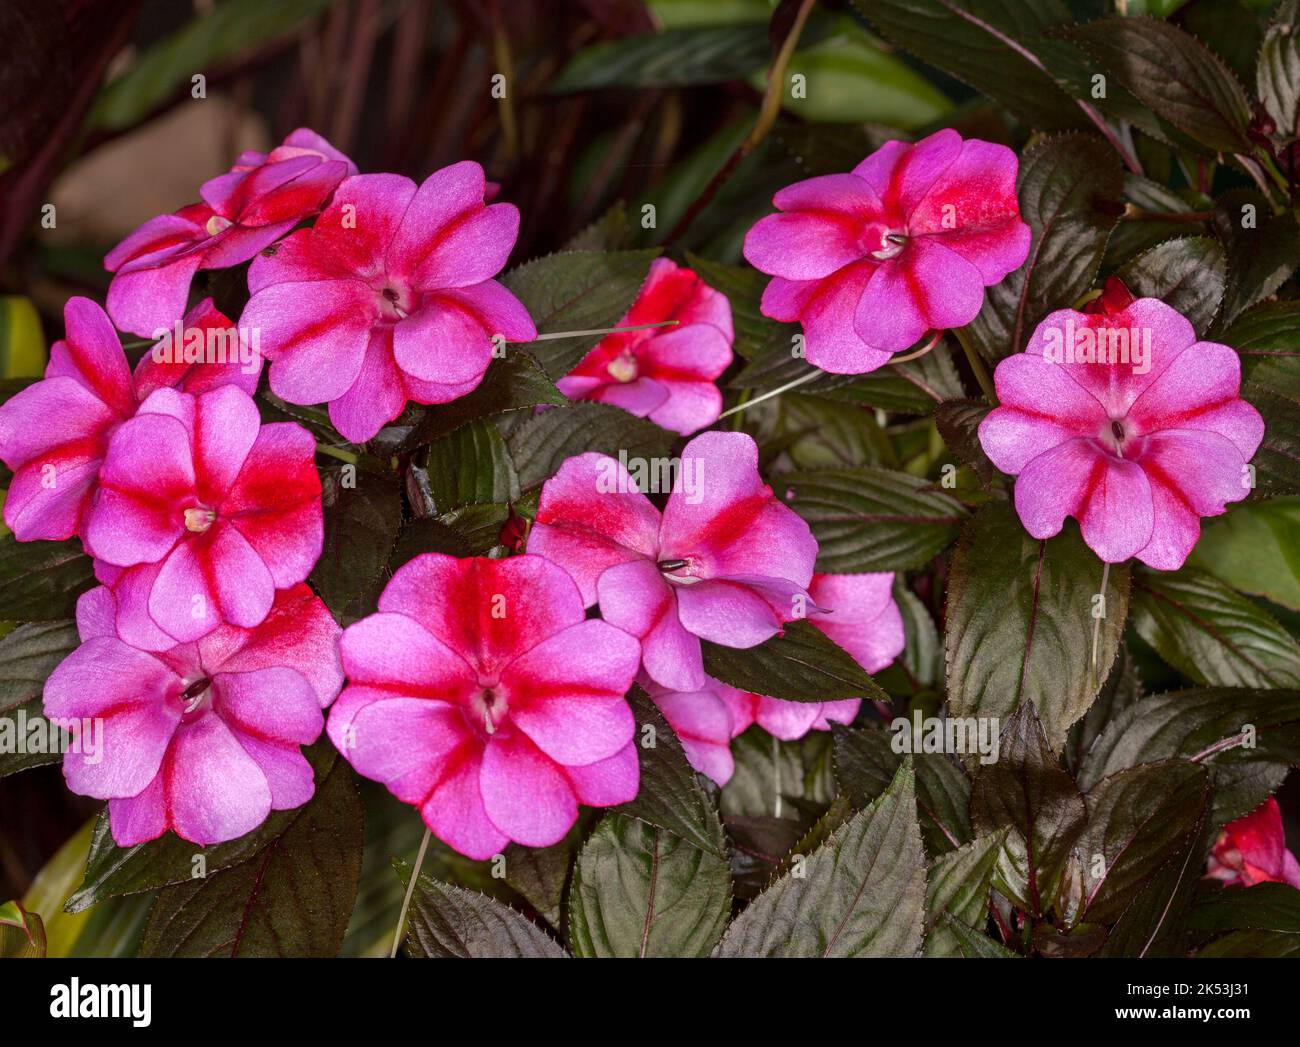 Groupe de fleurs rose vif parsemées de rouge d'Impatiens hawkerii hybride de Nouvelle-Guinée 'Harmony Radiance' et de feuilles vert foncé / rouge Banque D'Images